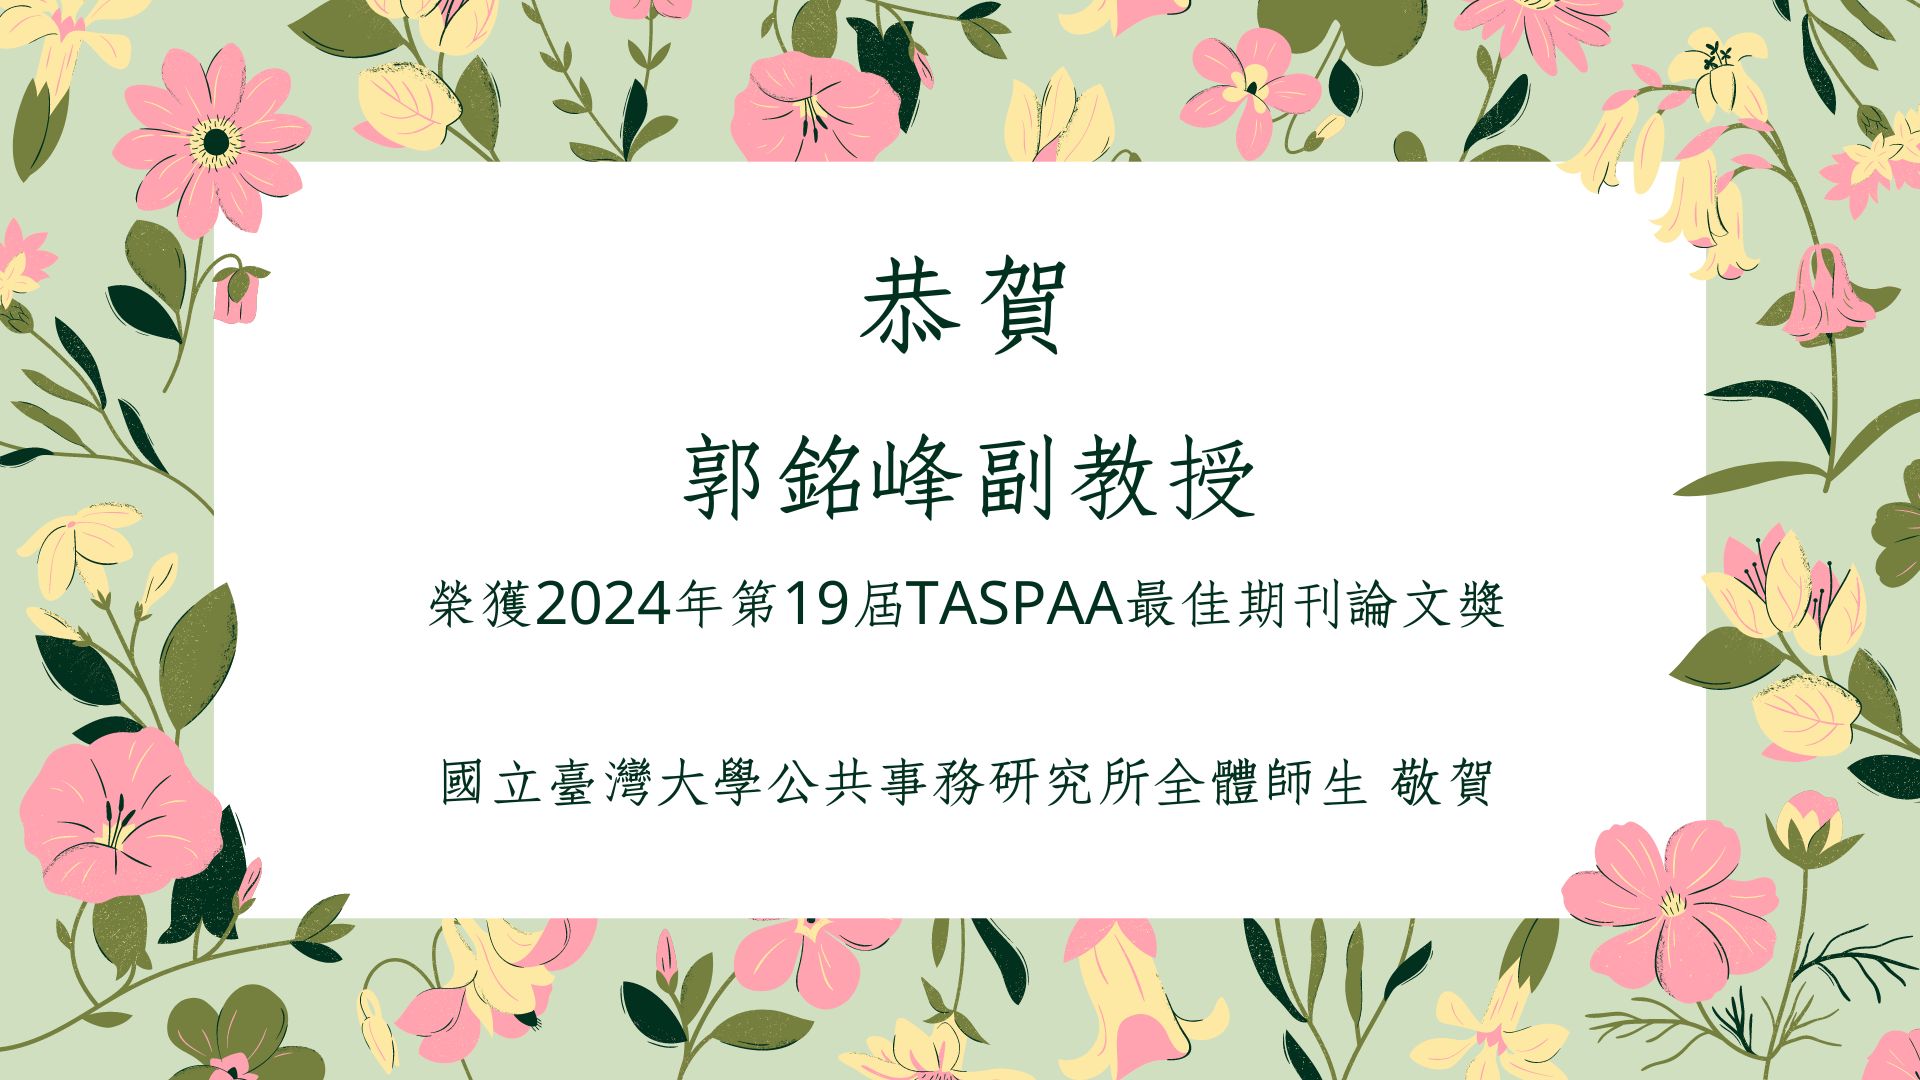 【榮譽分享】恭賀郭銘峰副教授獲得2024年TASPAA第19屆最佳期刊論文獎